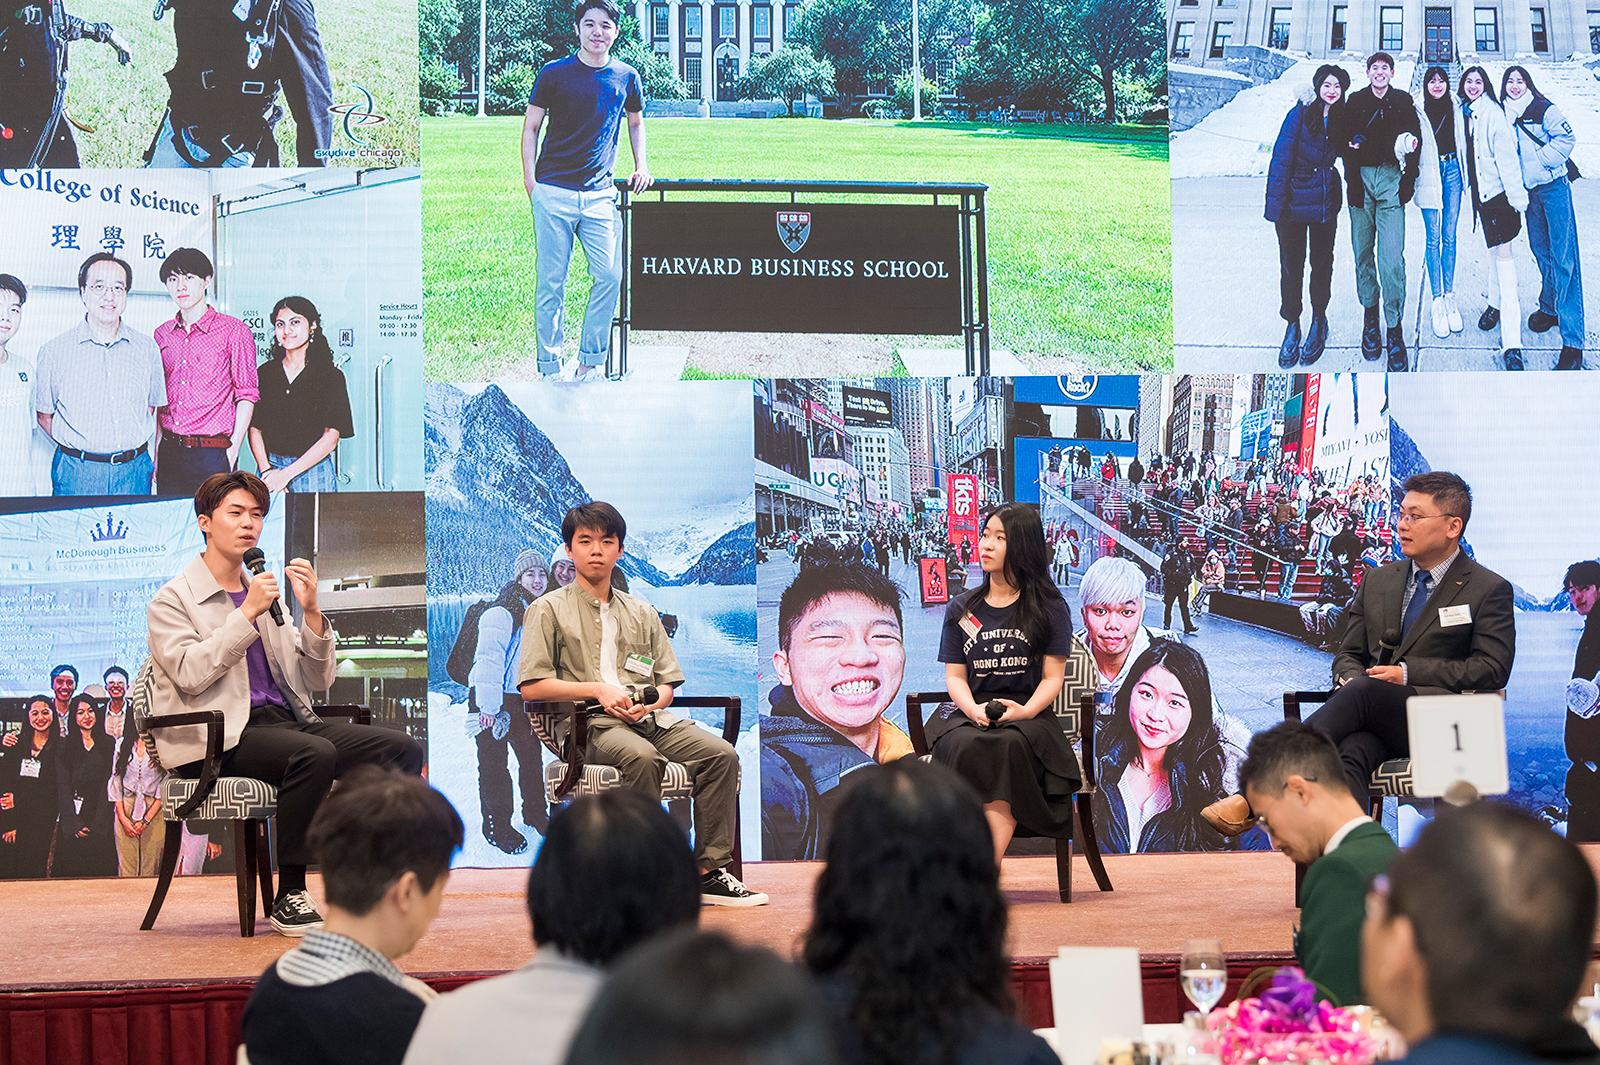 張澤松教授（右一）主持城大三名學生的分享環節，黃志權（左一）分享城大提供多元化海外交流機會，助他拓展視野。